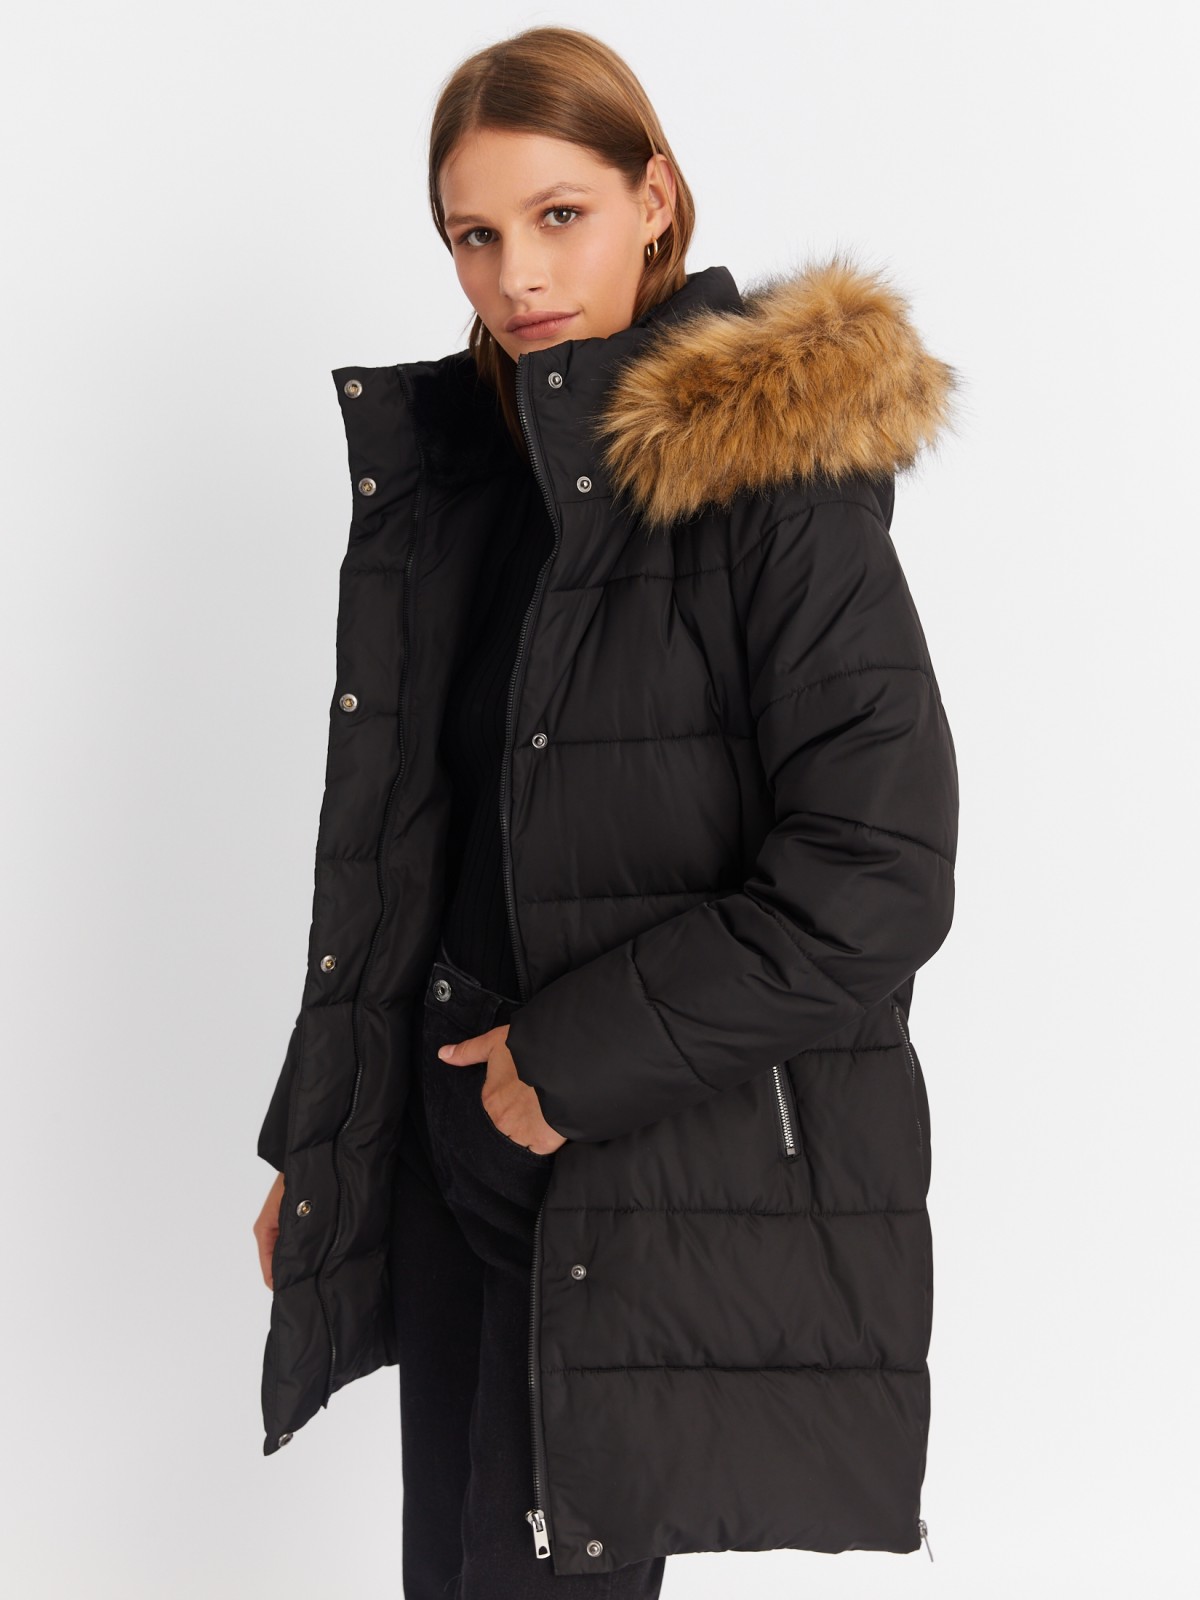 Тёплая куртка-пальто с капюшоном и боковыми шлицами на молниях zolla 022425212014, цвет черный, размер XS